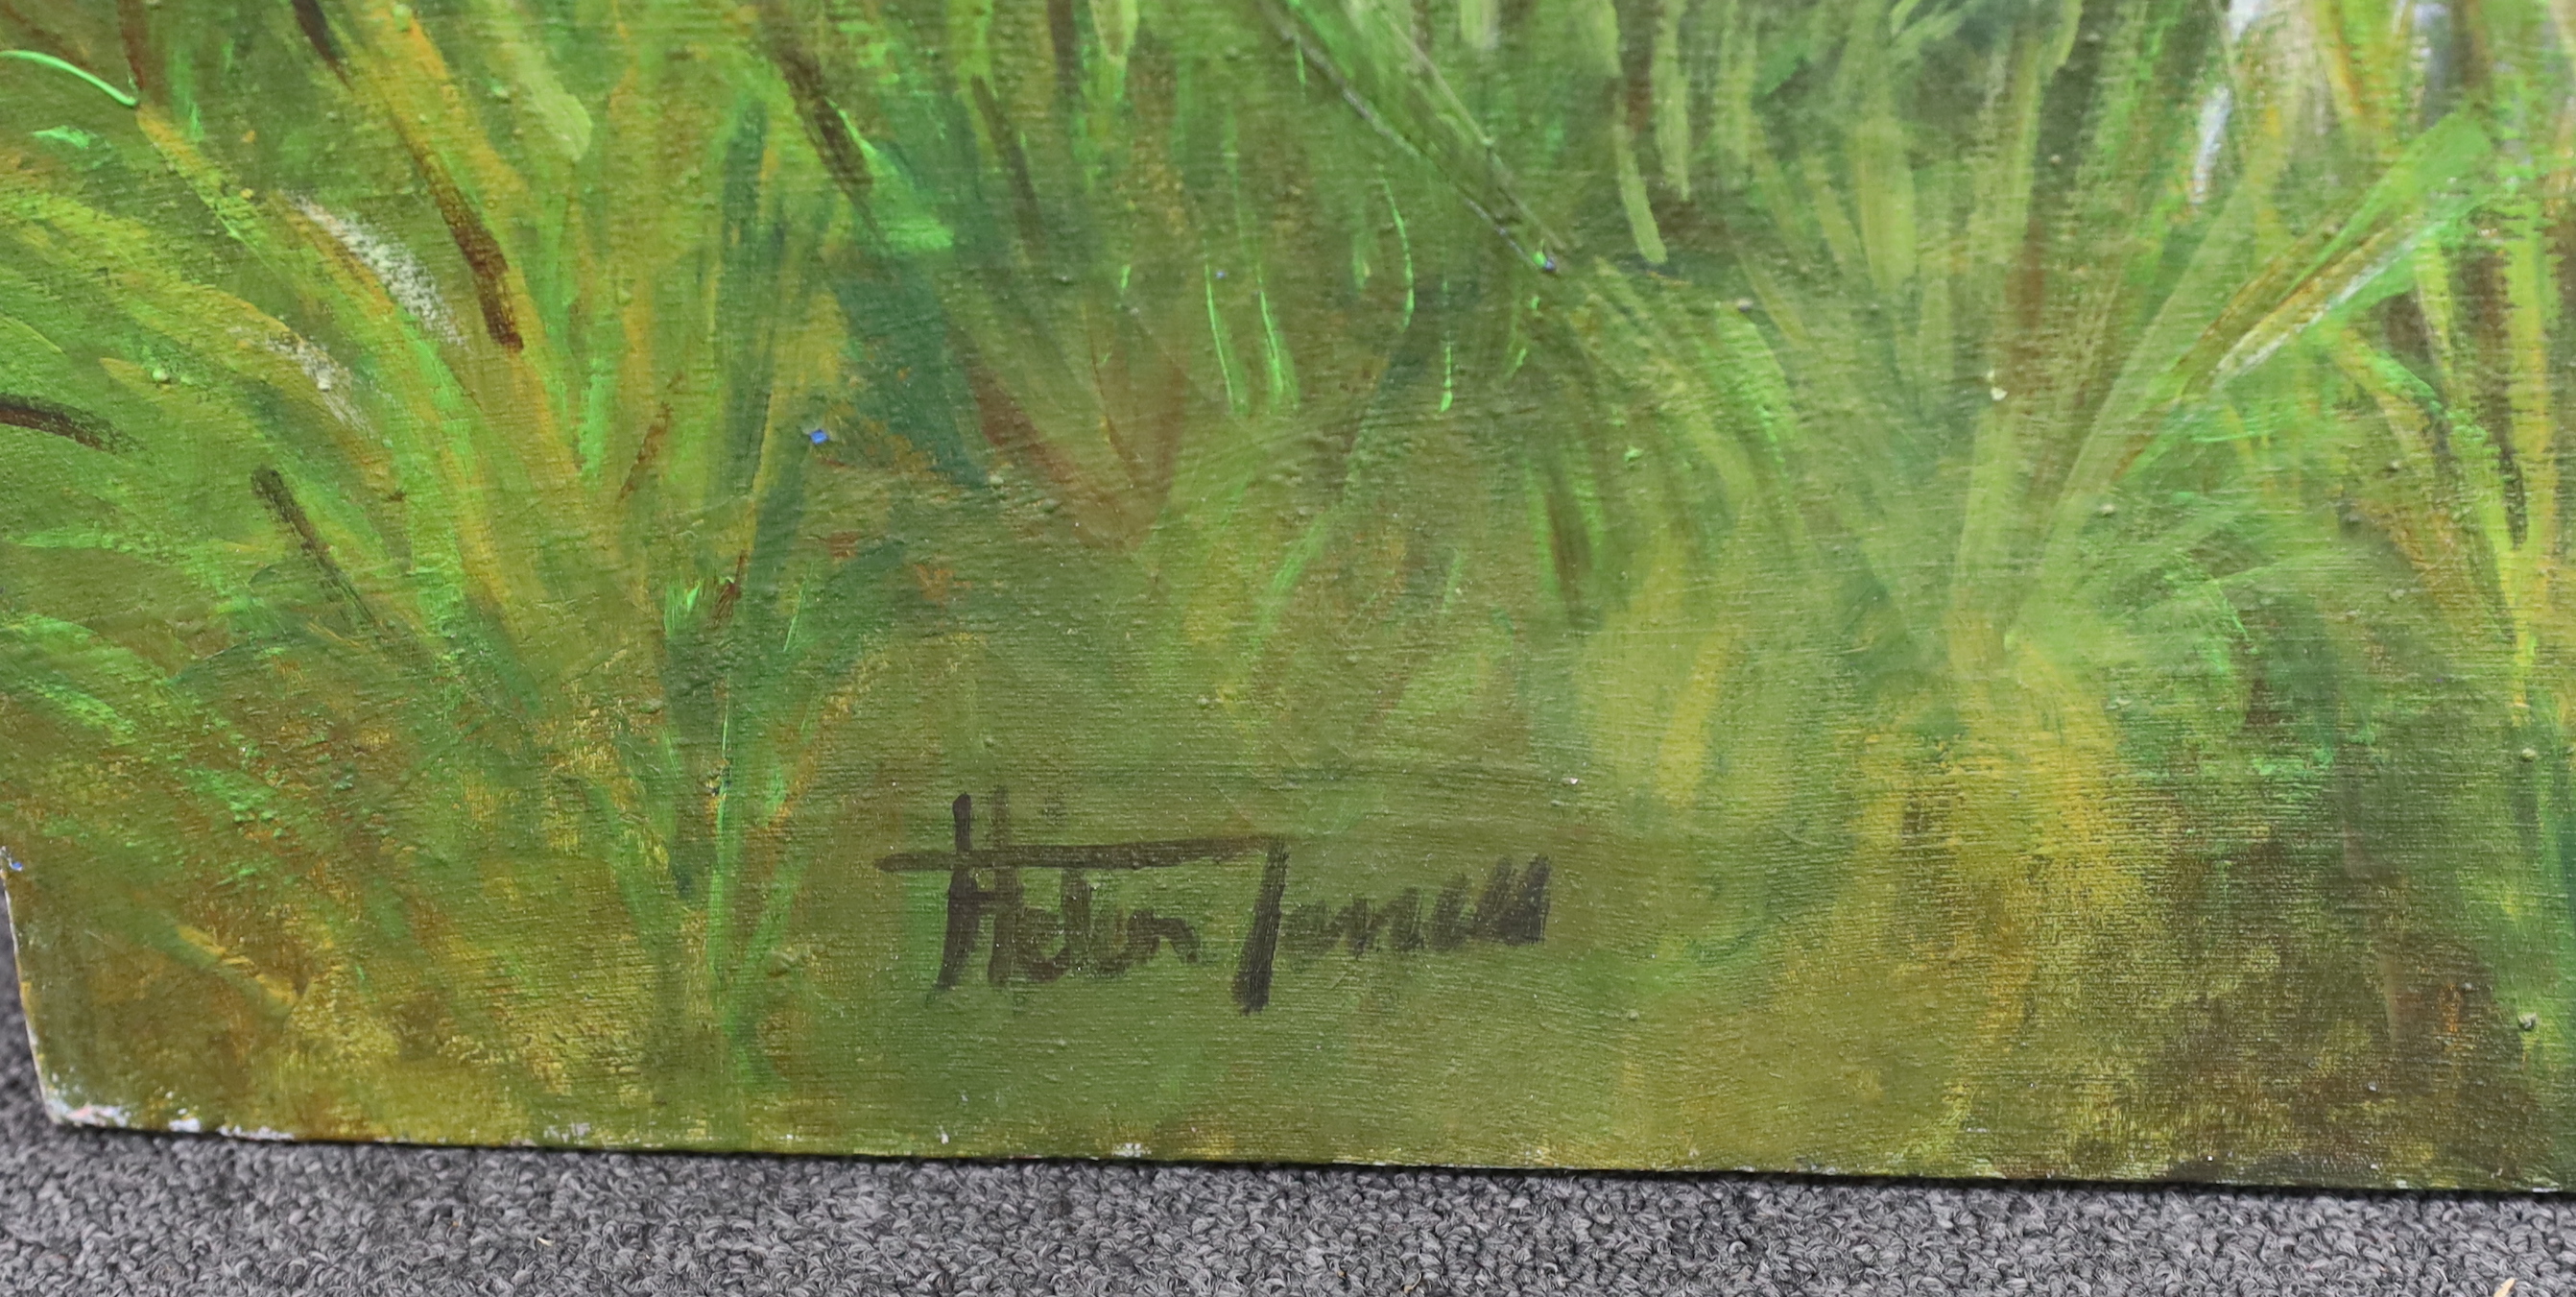 Helen James, oil on canvas, Two Springer Spaniels, signed, unframed, 95 x 94cm